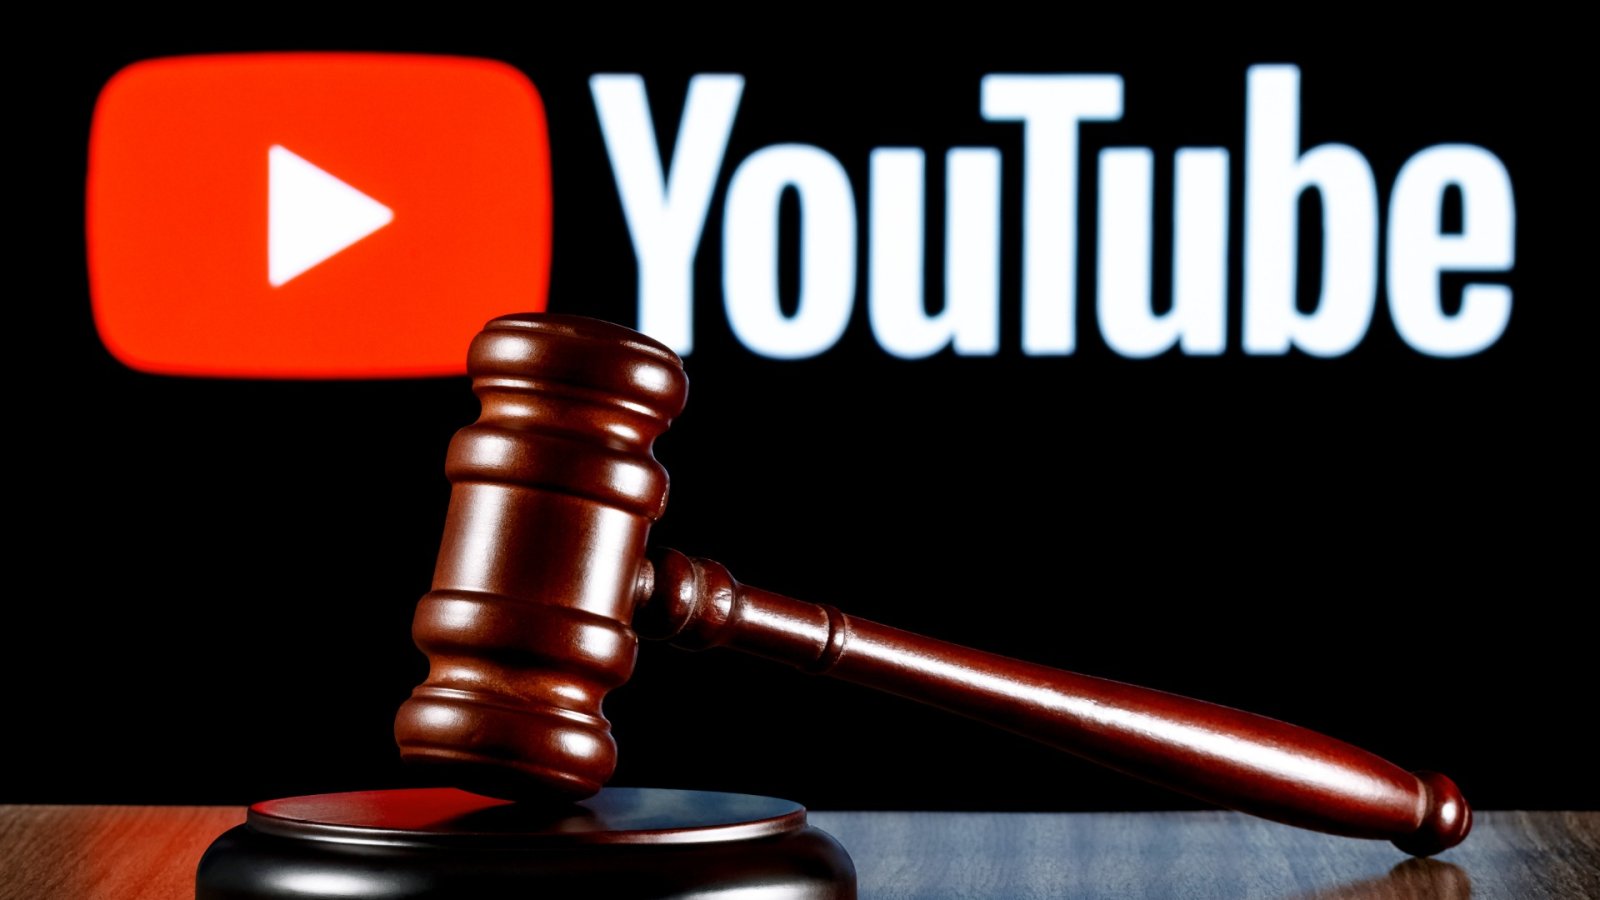 एक YouTuber की मां पर दुर्व्यवहार का आरोप लगाते हुए $22 मिलियन का मुकदमा